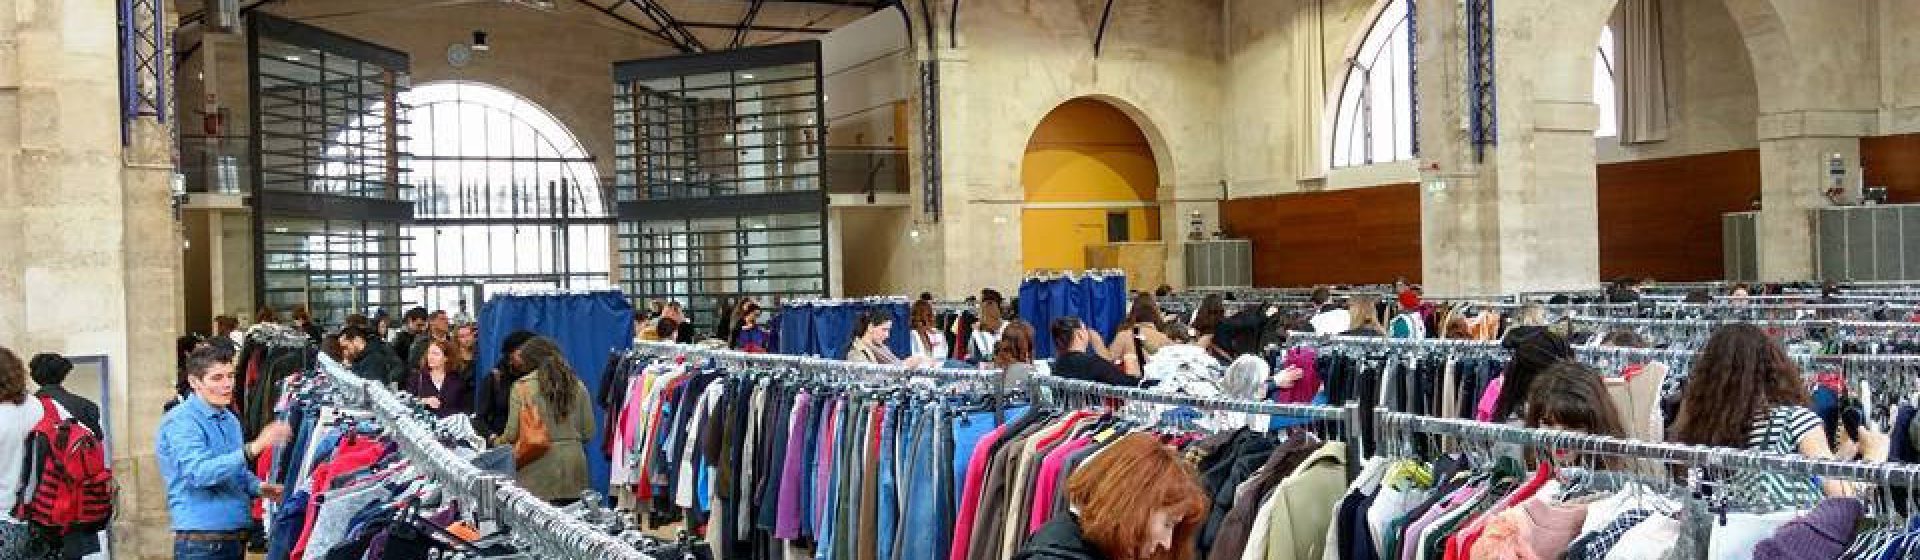 Service de magasins de vêtements à Roubaix – Outlet Millet Lafuma